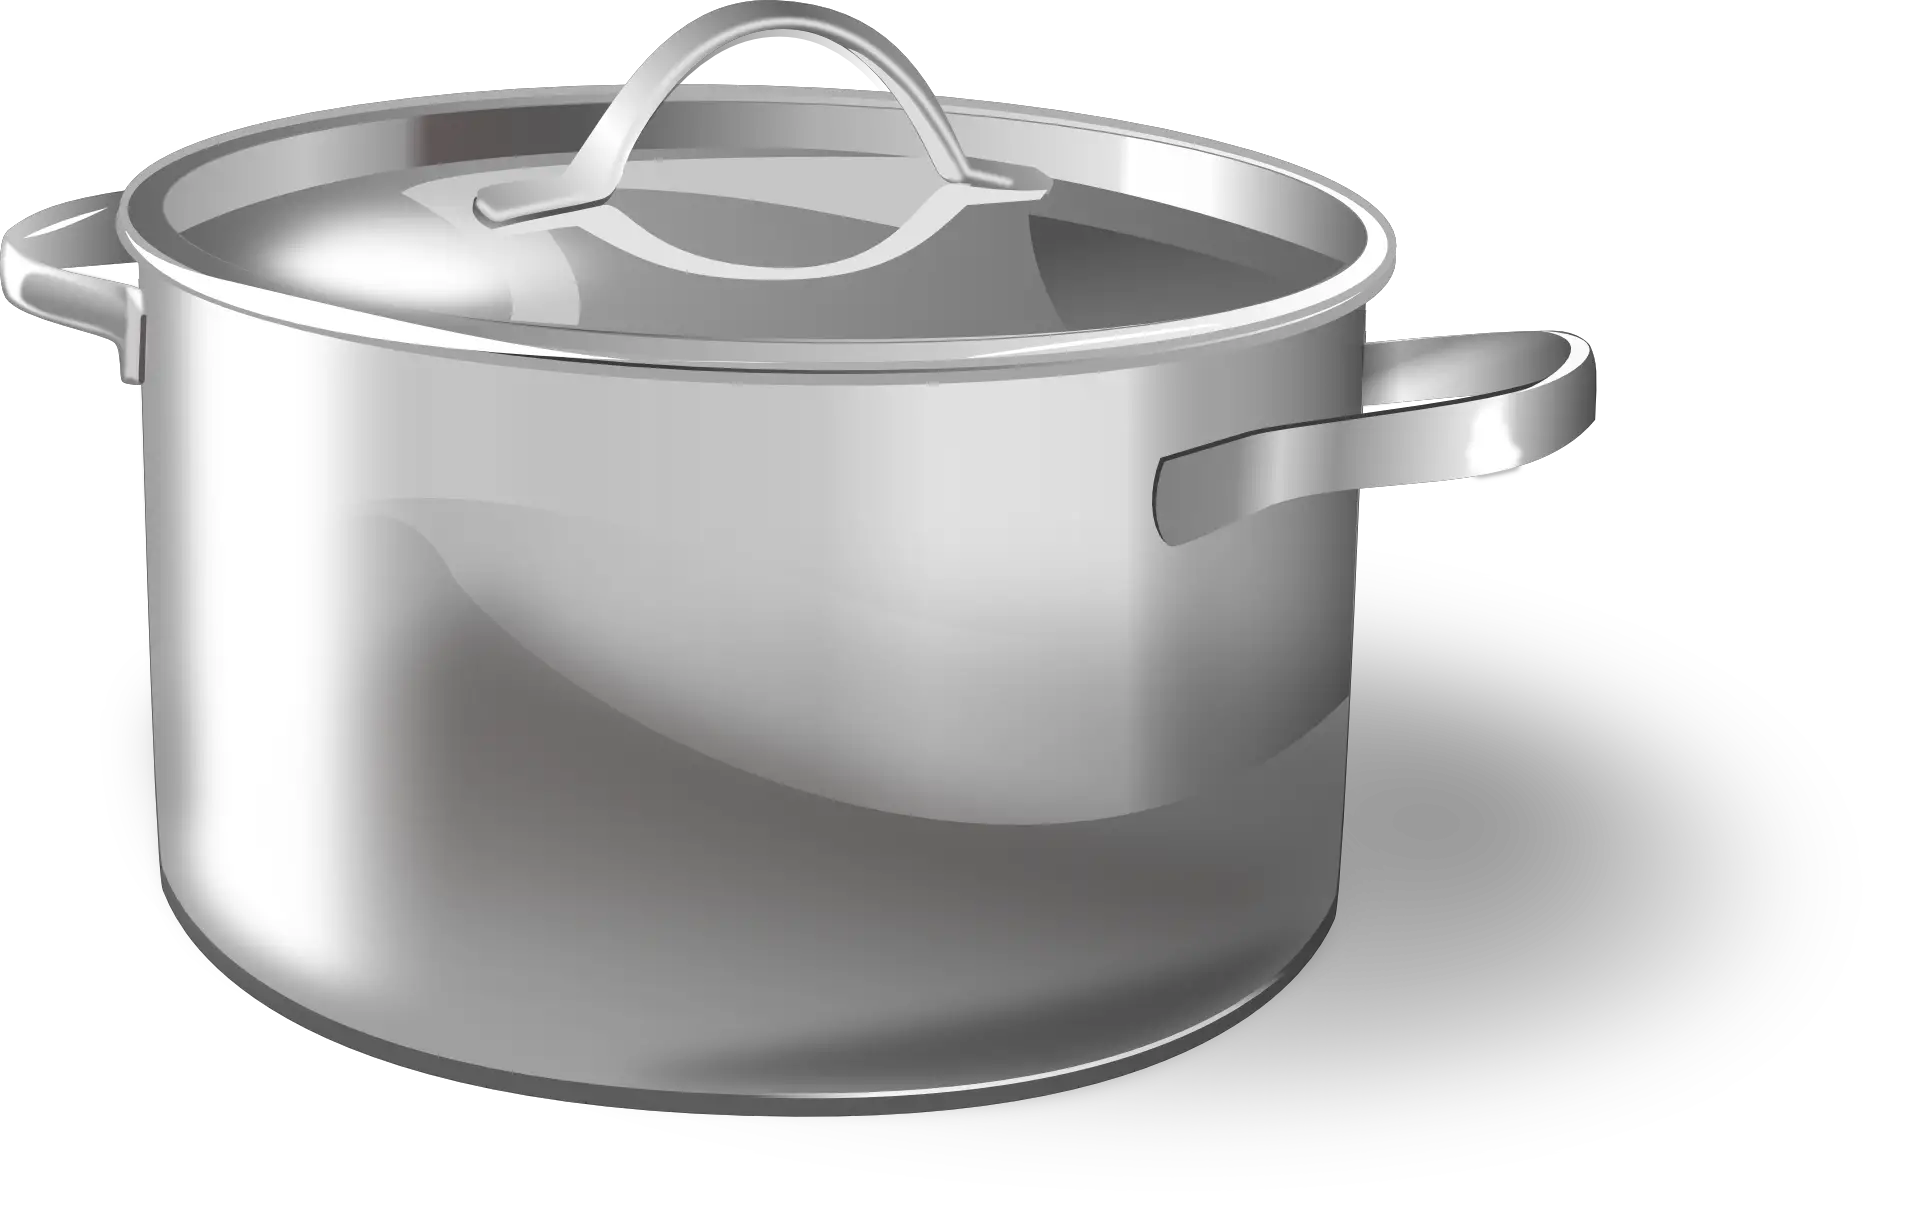 cooking pot, sauce pan, pot